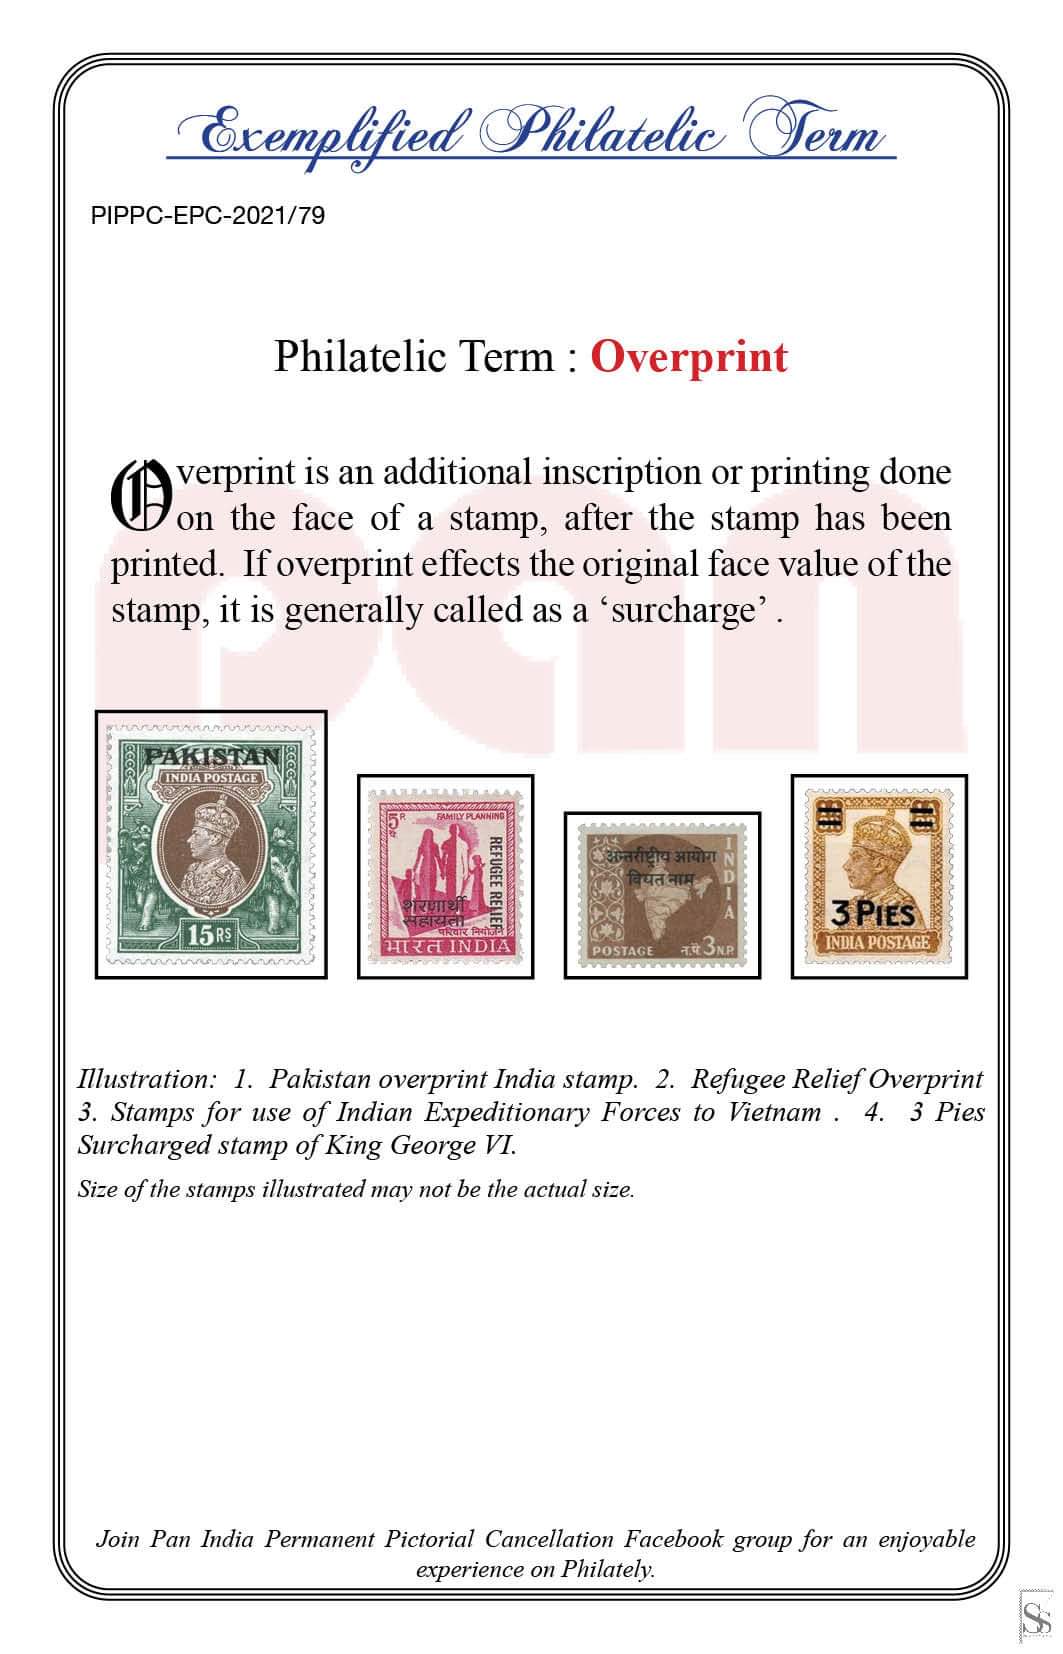 79. Today's Exemplified Philatelic term-Overprint